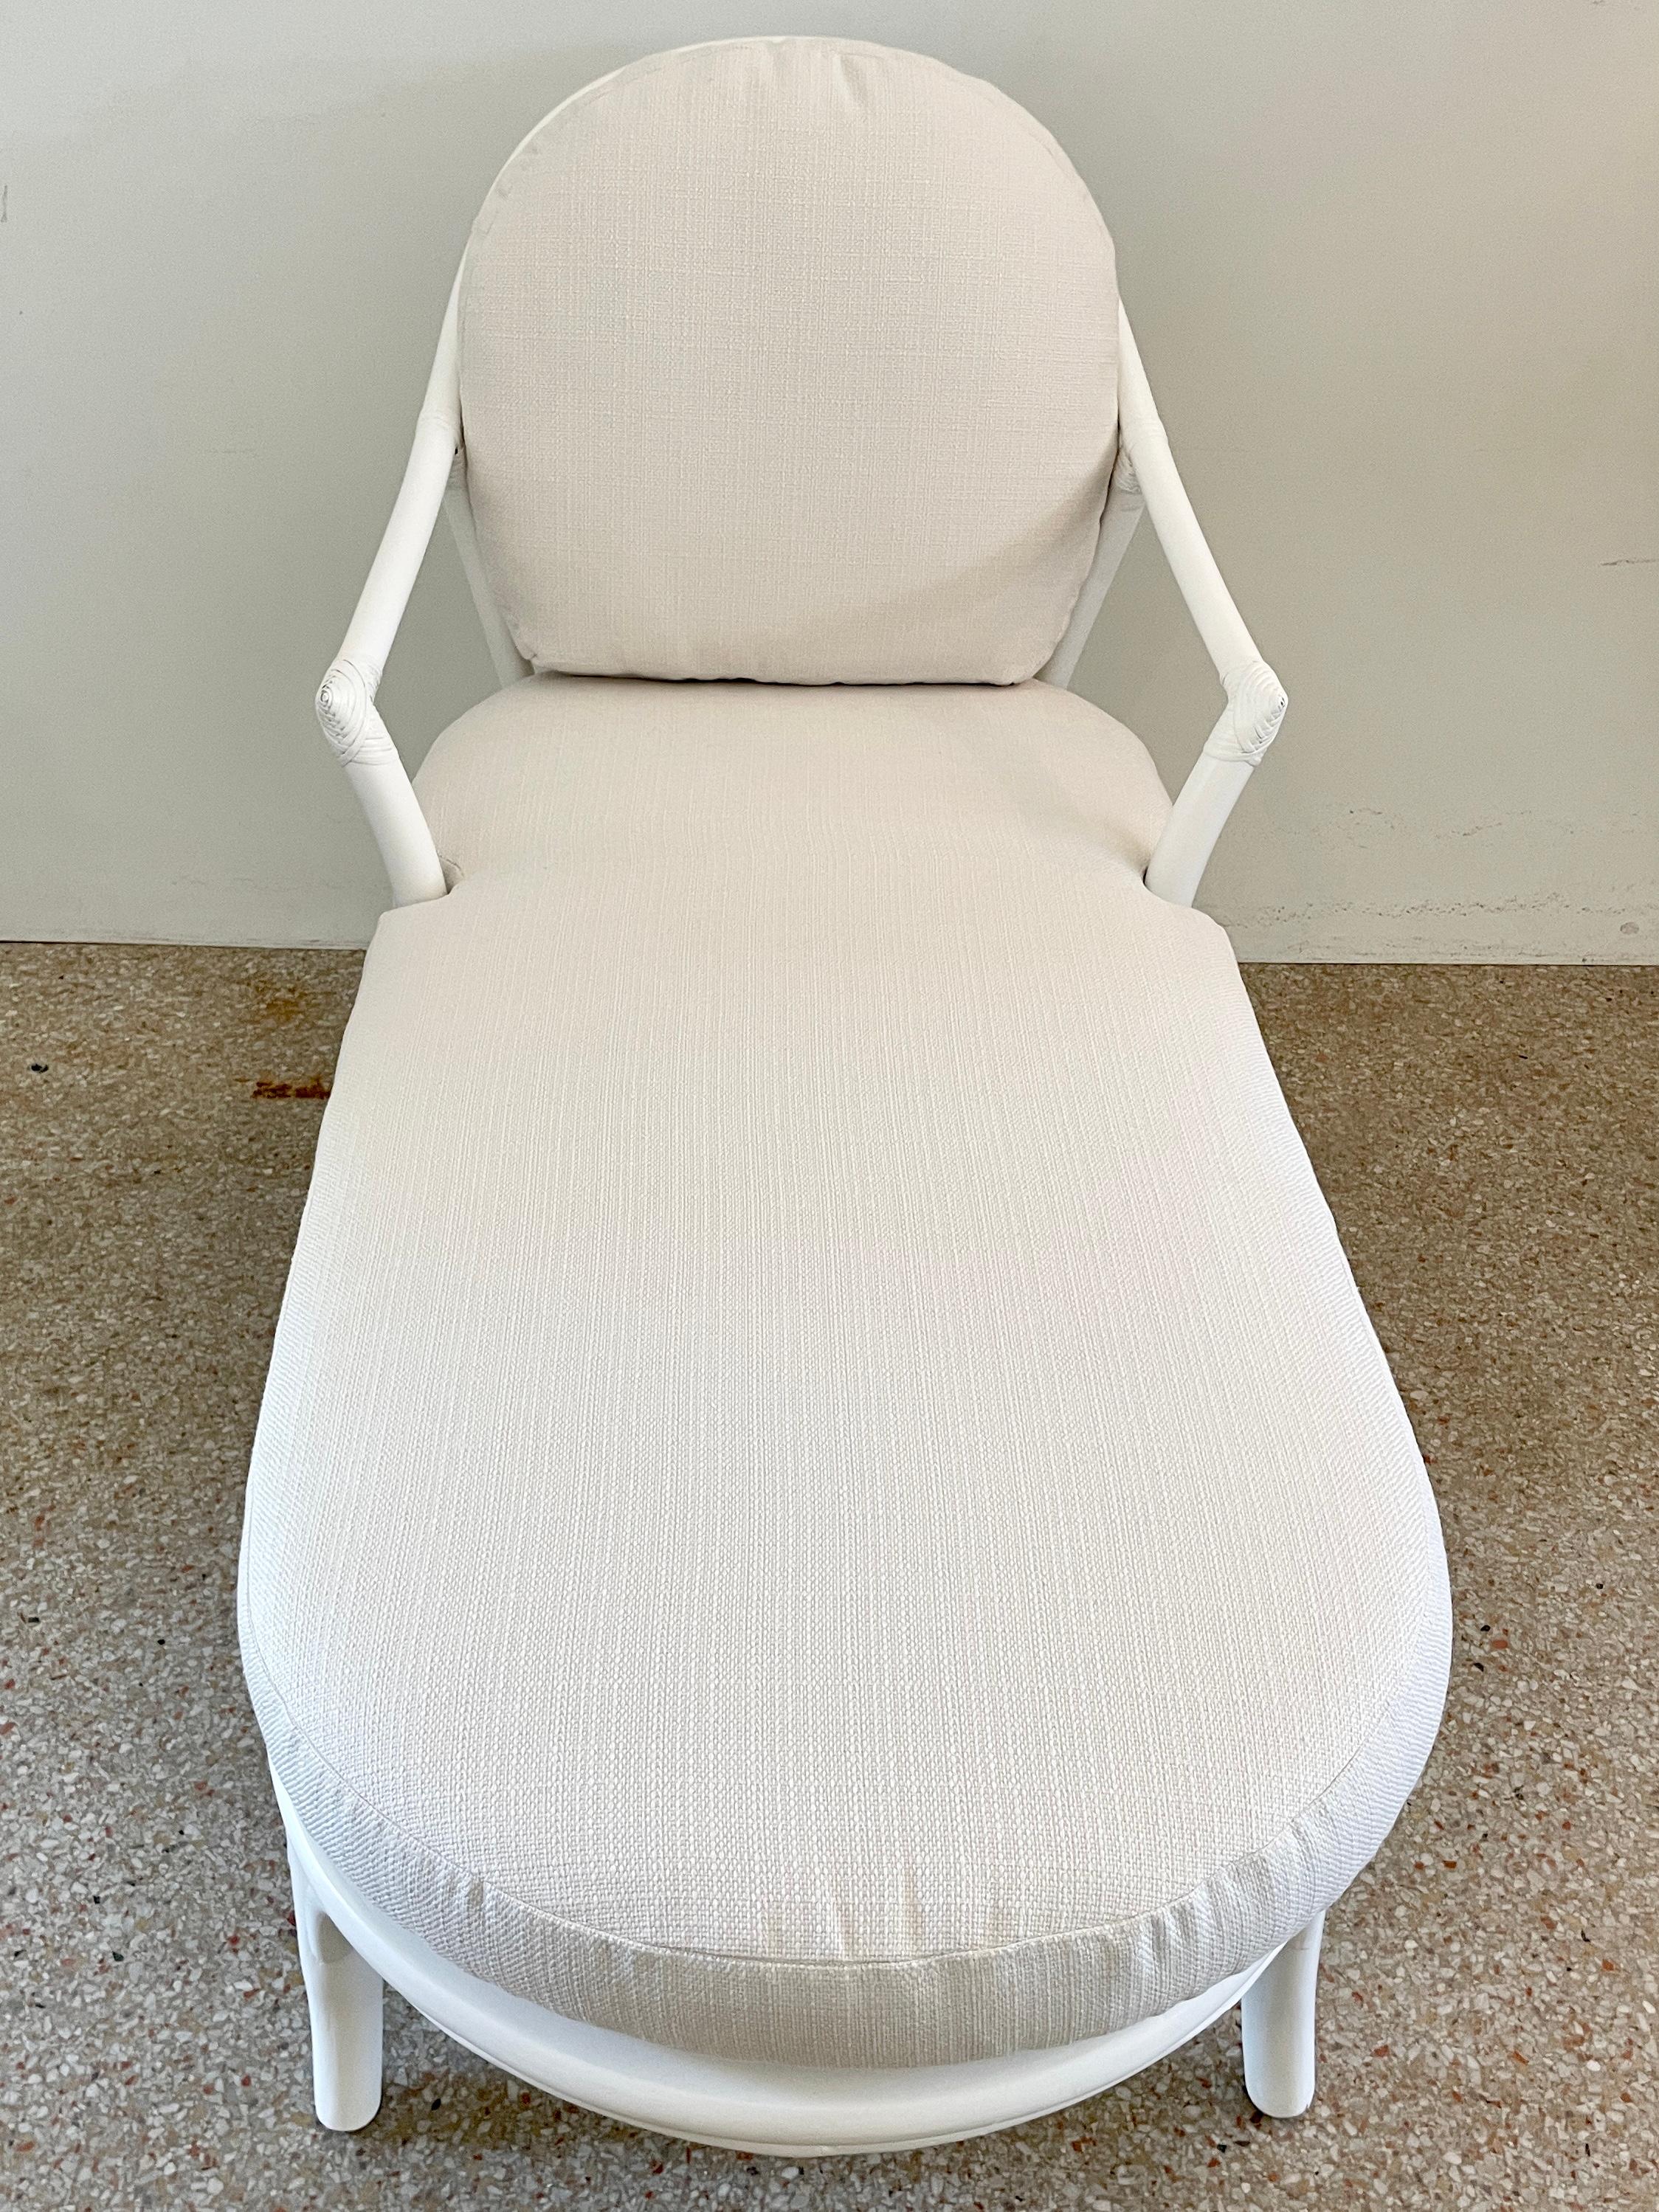 Schöne Boho-Chic Ficks Reed Rattan Chaise mit neuen Todd Hase Textilien Kissen. Das Sitzgestell ist aus Schilfrohr gefertigt und frisch weiß lackiert. Eine großartige Ergänzung für Ihre vom Boho-Chic inspirierten Innenräume. Wir haben zwei zur